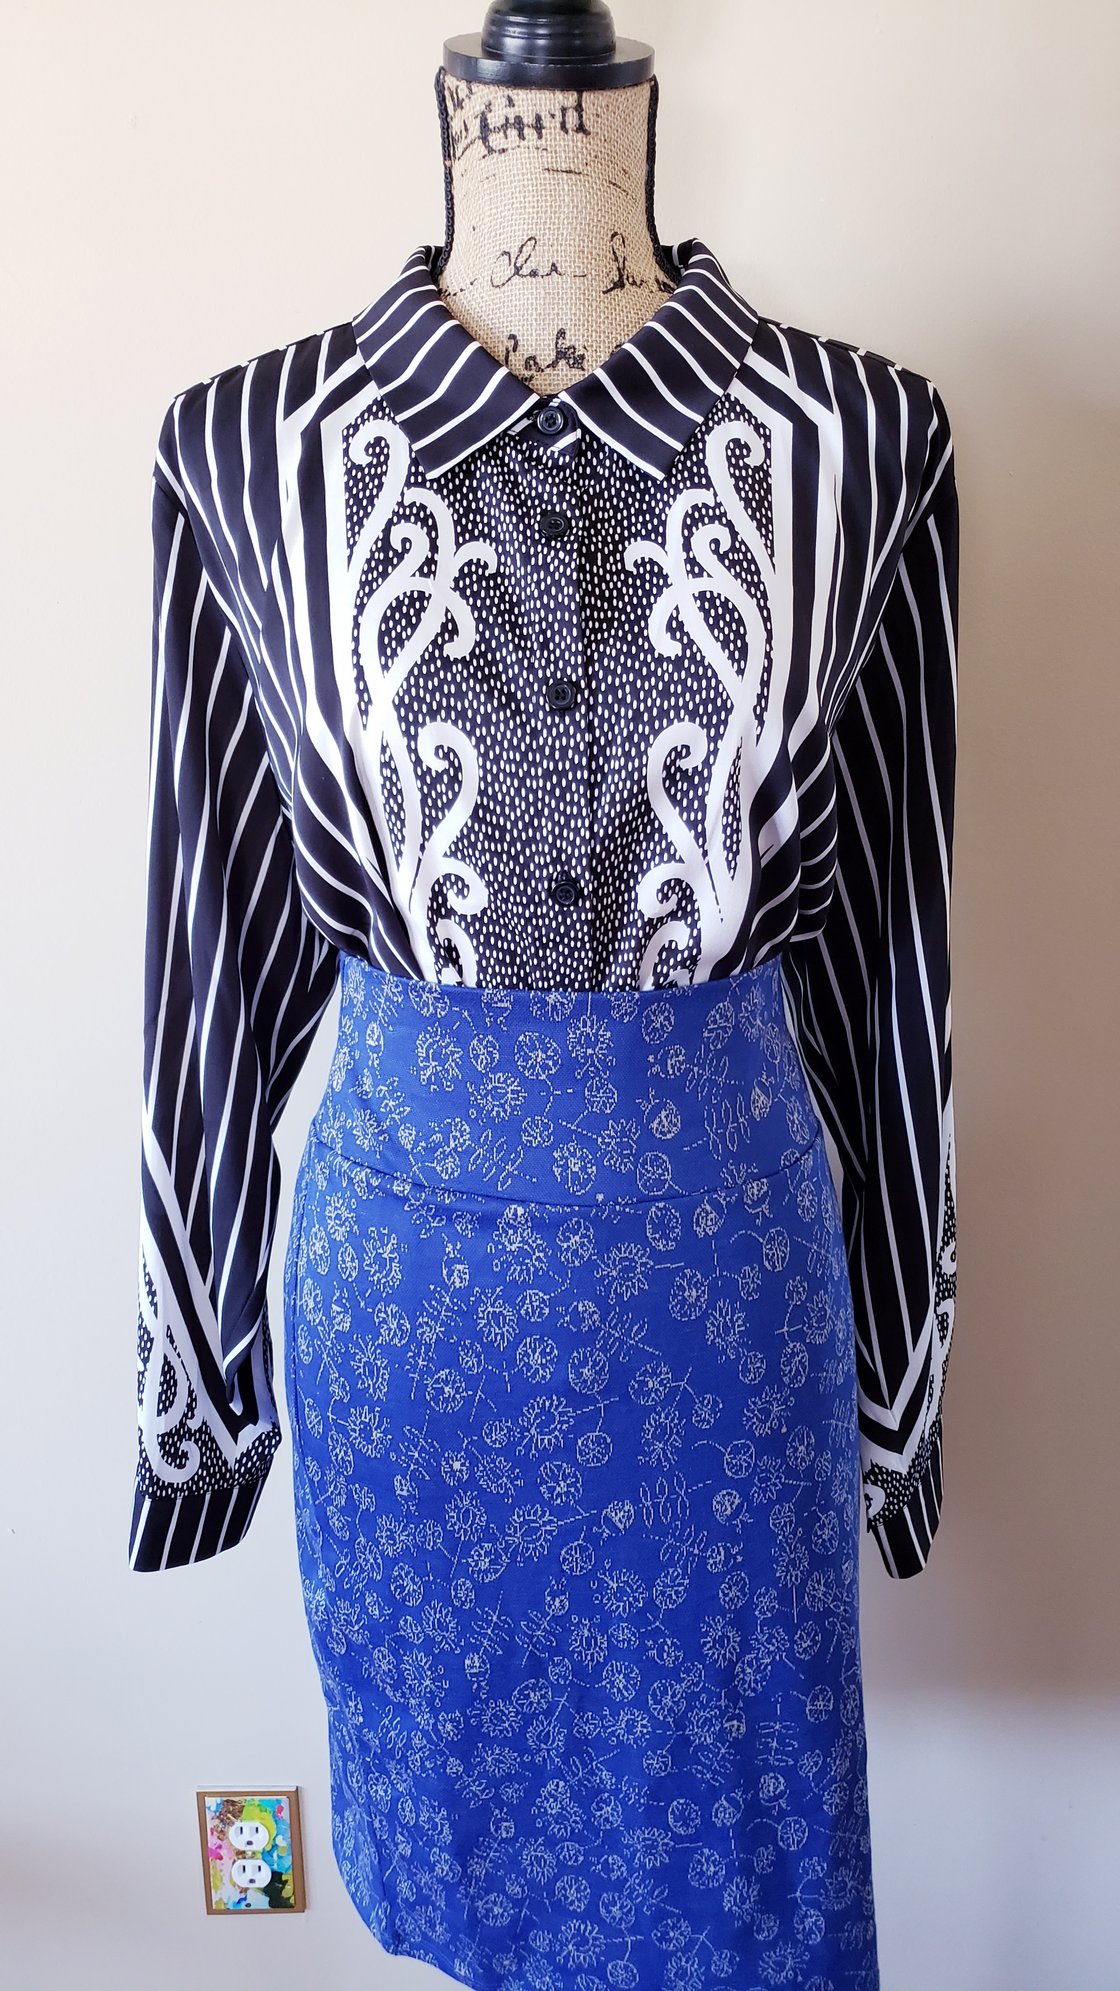 Image of Blue/White Skirt